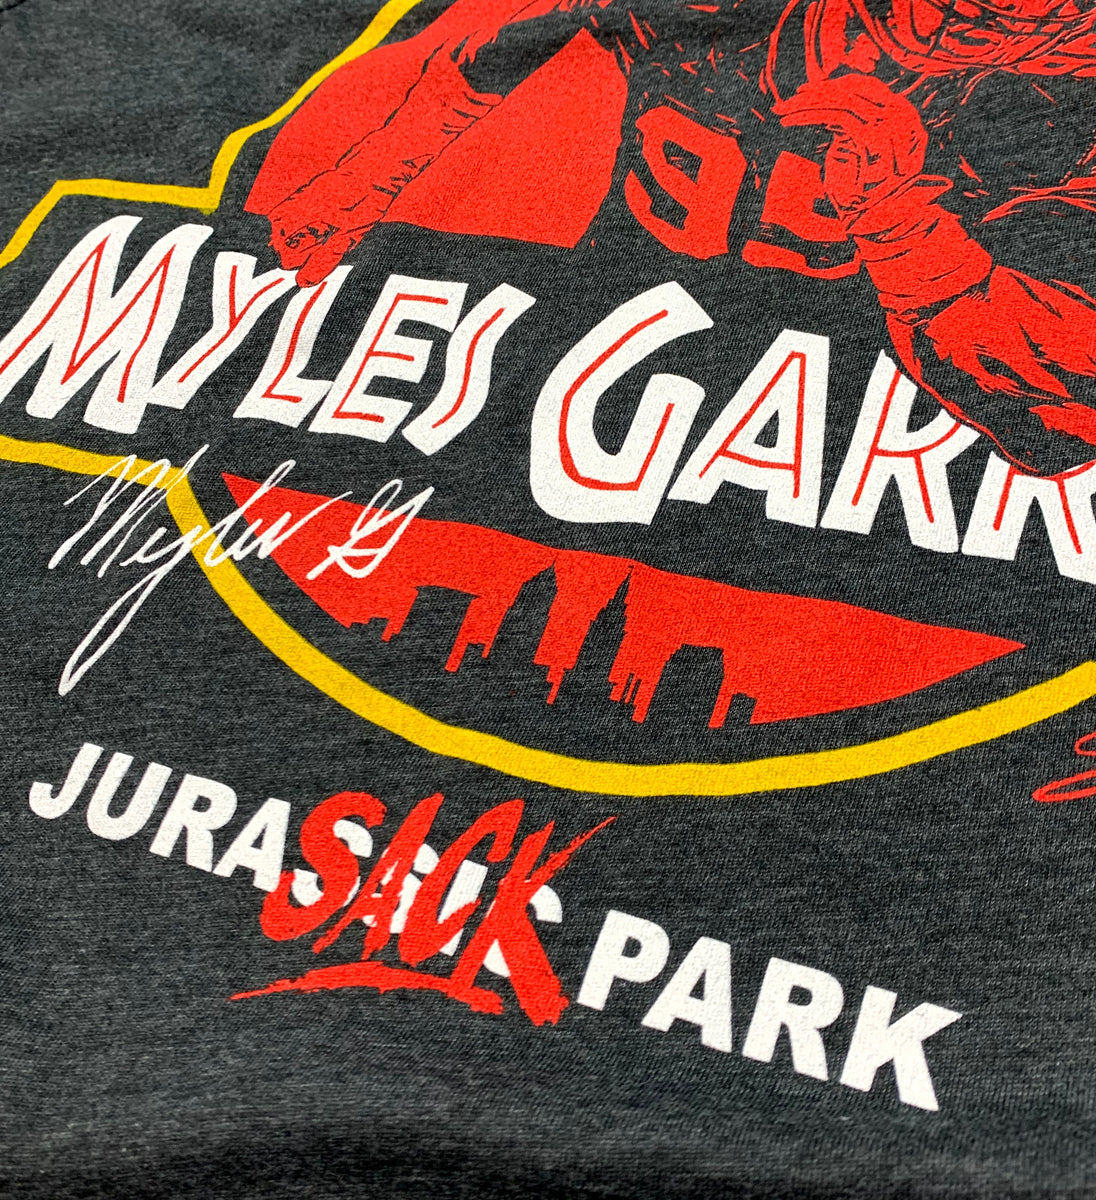 Jurassic Myles Garrett T shirt